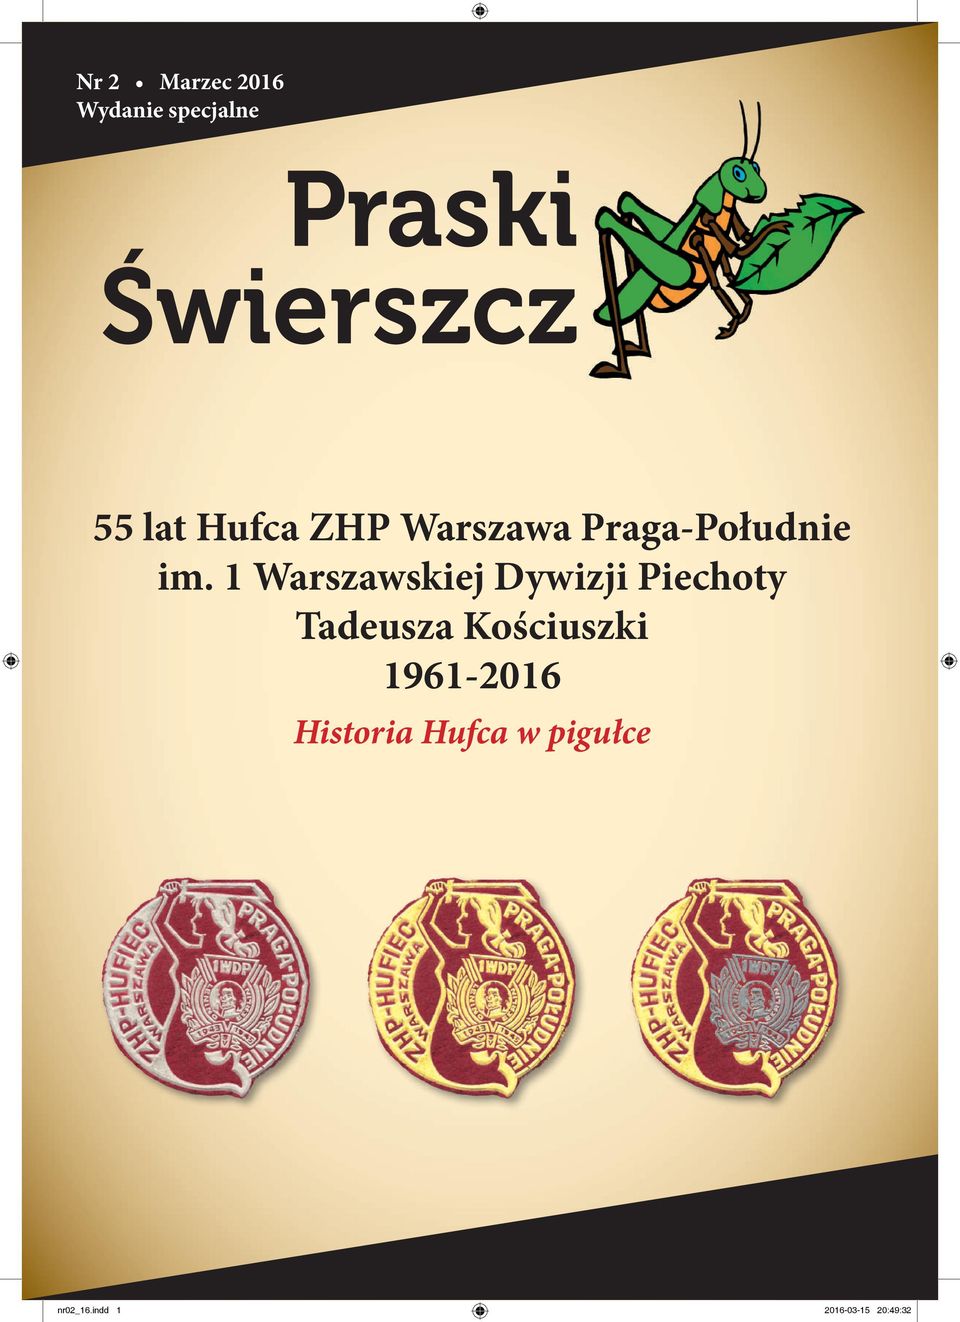 1 Warszawskiej Dywizji Piechoty Tadeusza